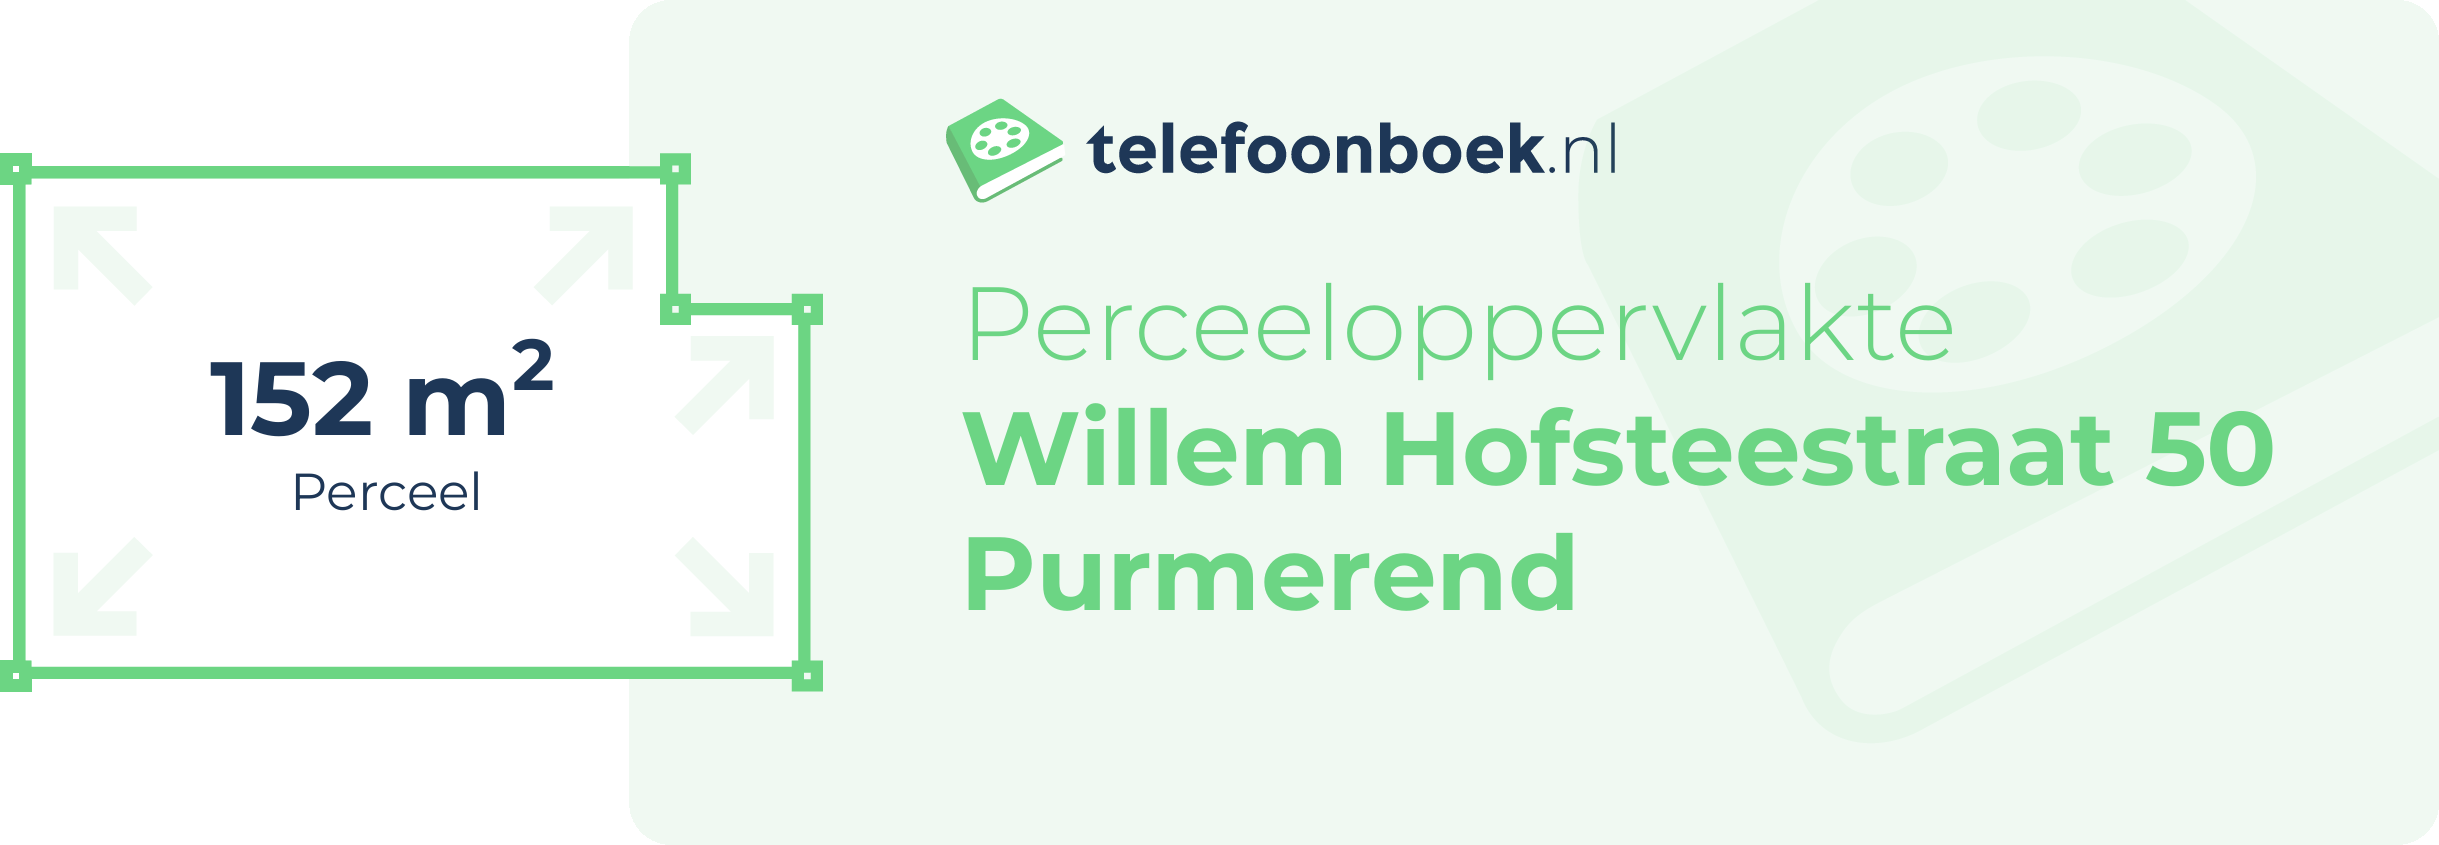 Perceeloppervlakte Willem Hofsteestraat 50 Purmerend